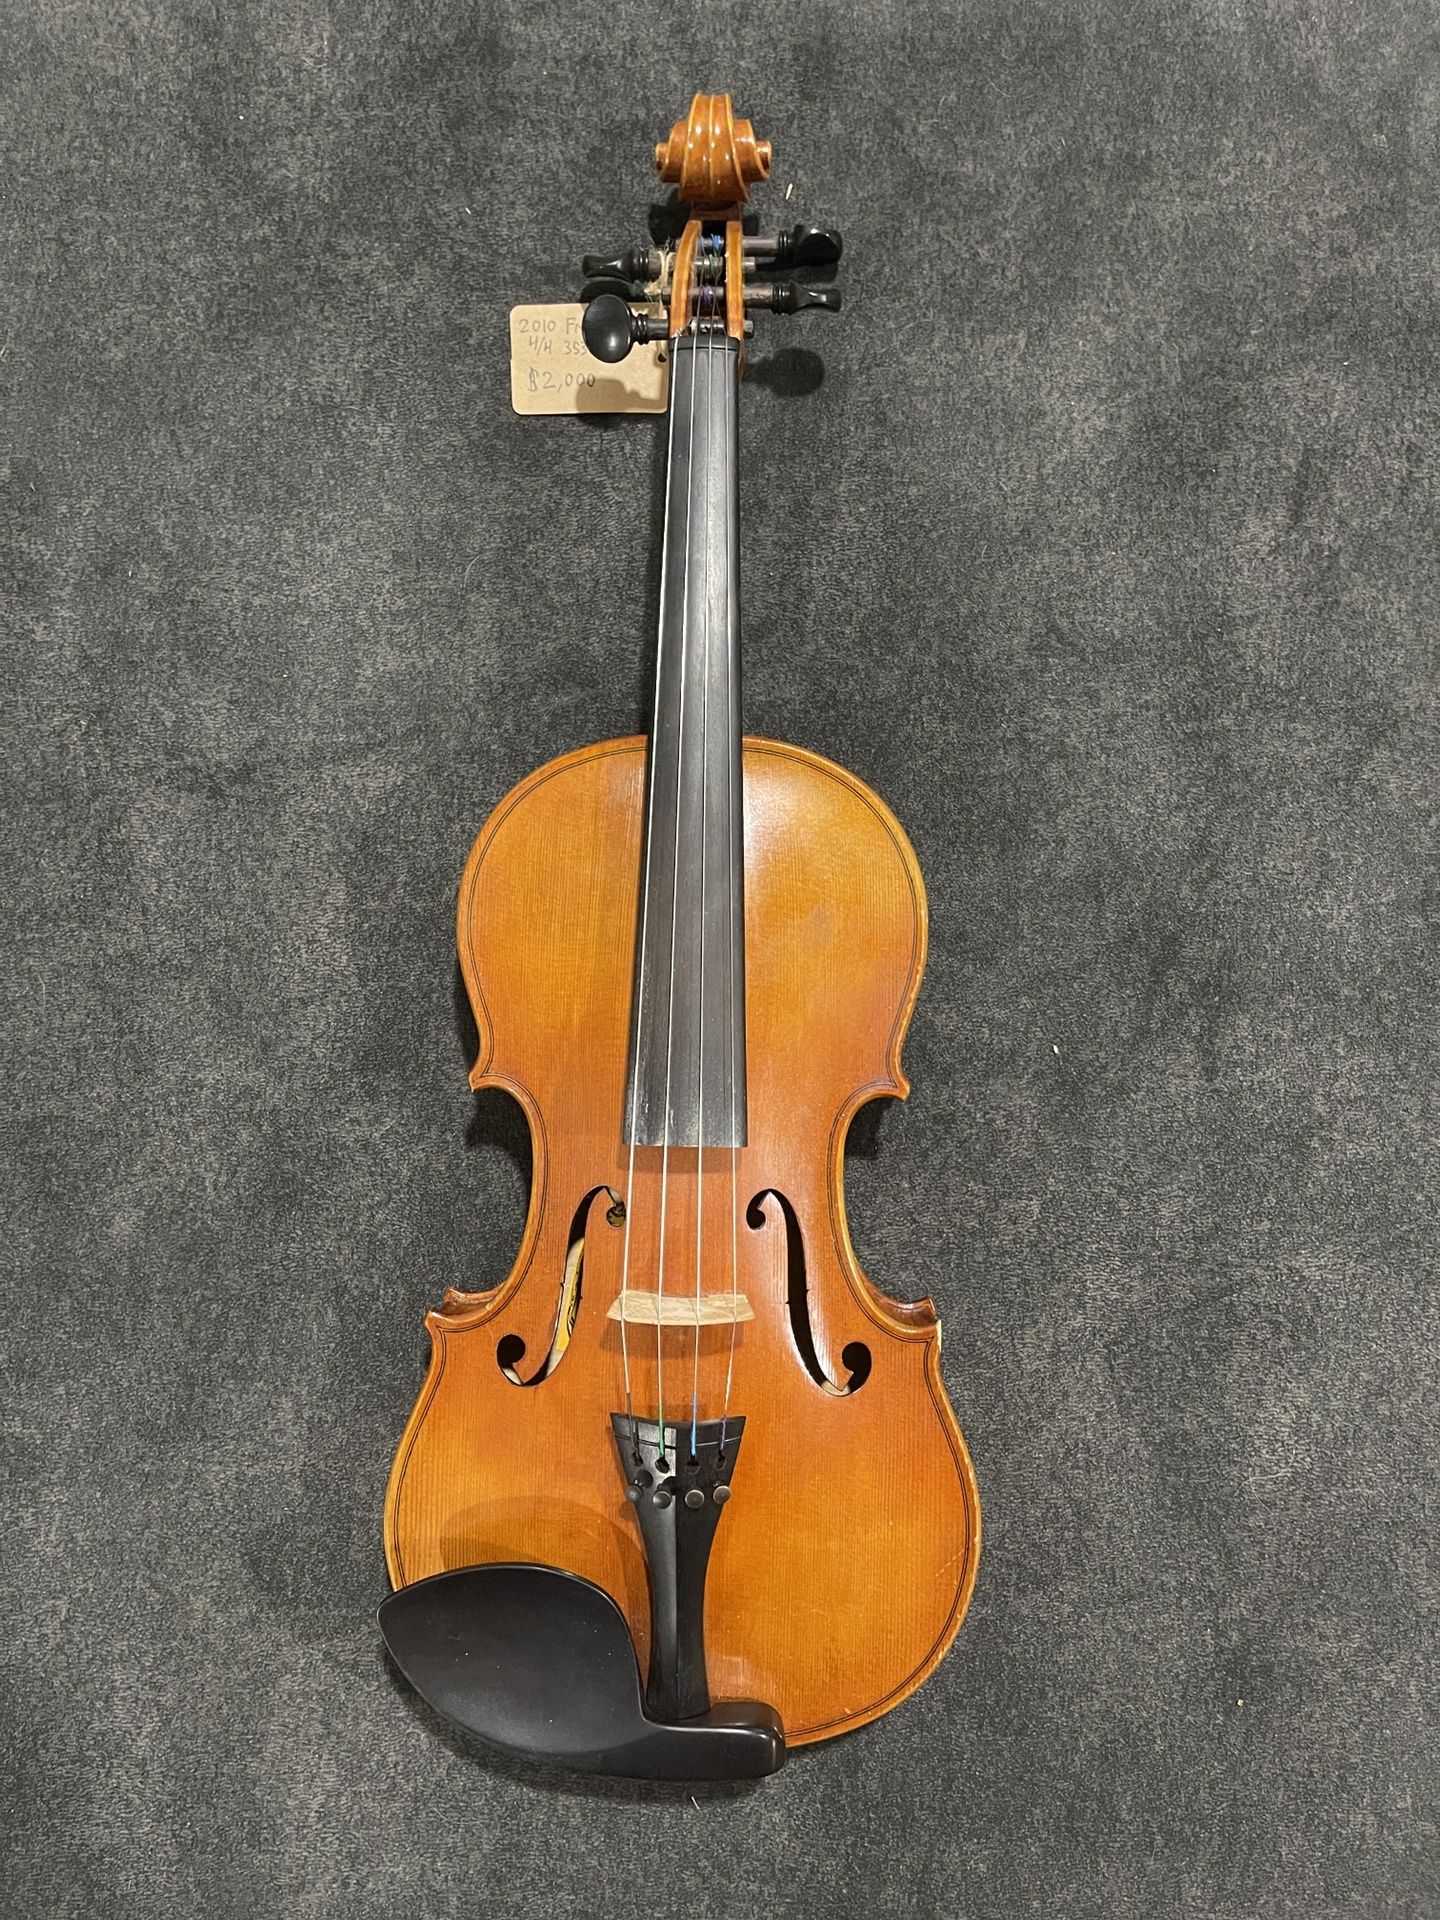 4/4 Guarnerius Copy Violin From Romania